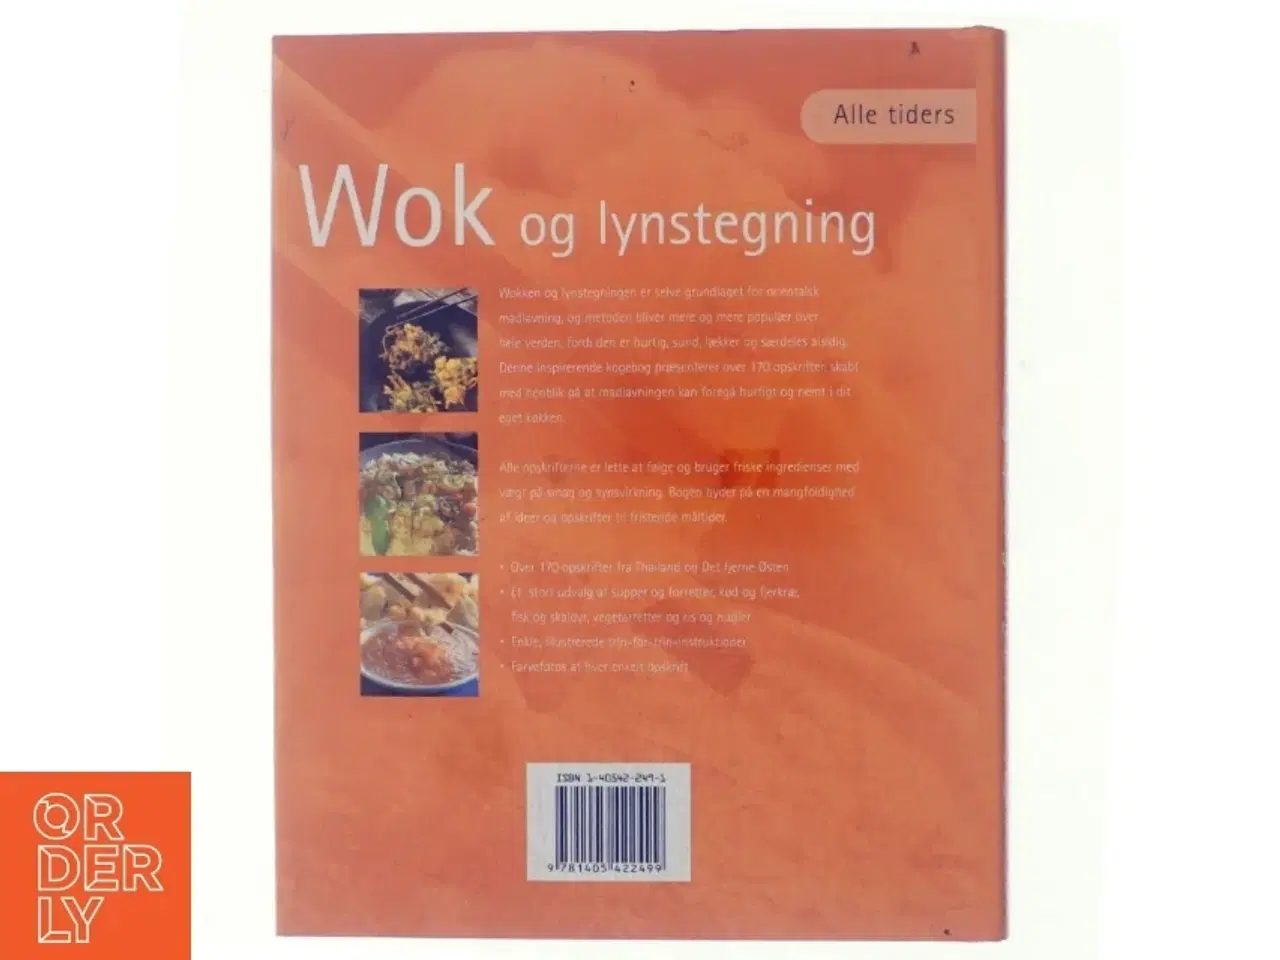 Billede 3 - Alle tiders wok og lynstegning (Bog)